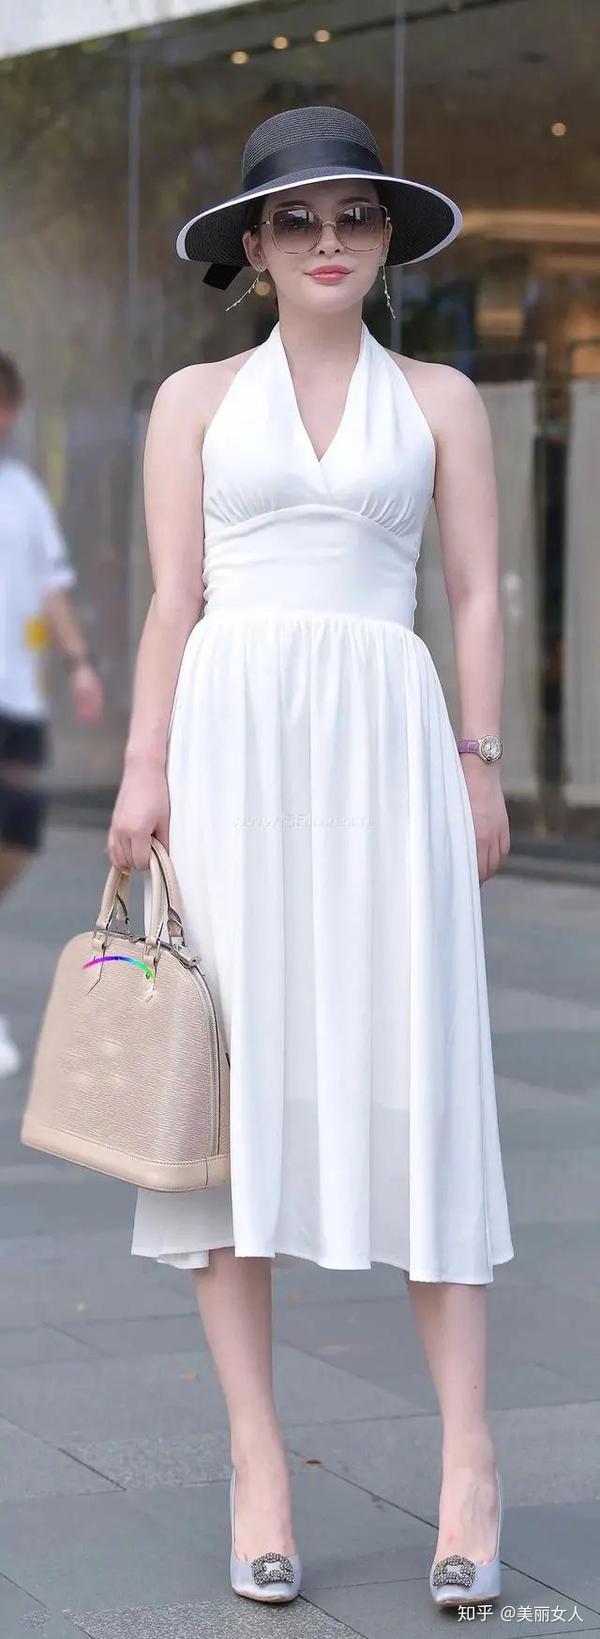 穿白色高跟鞋和白裙子美女图片